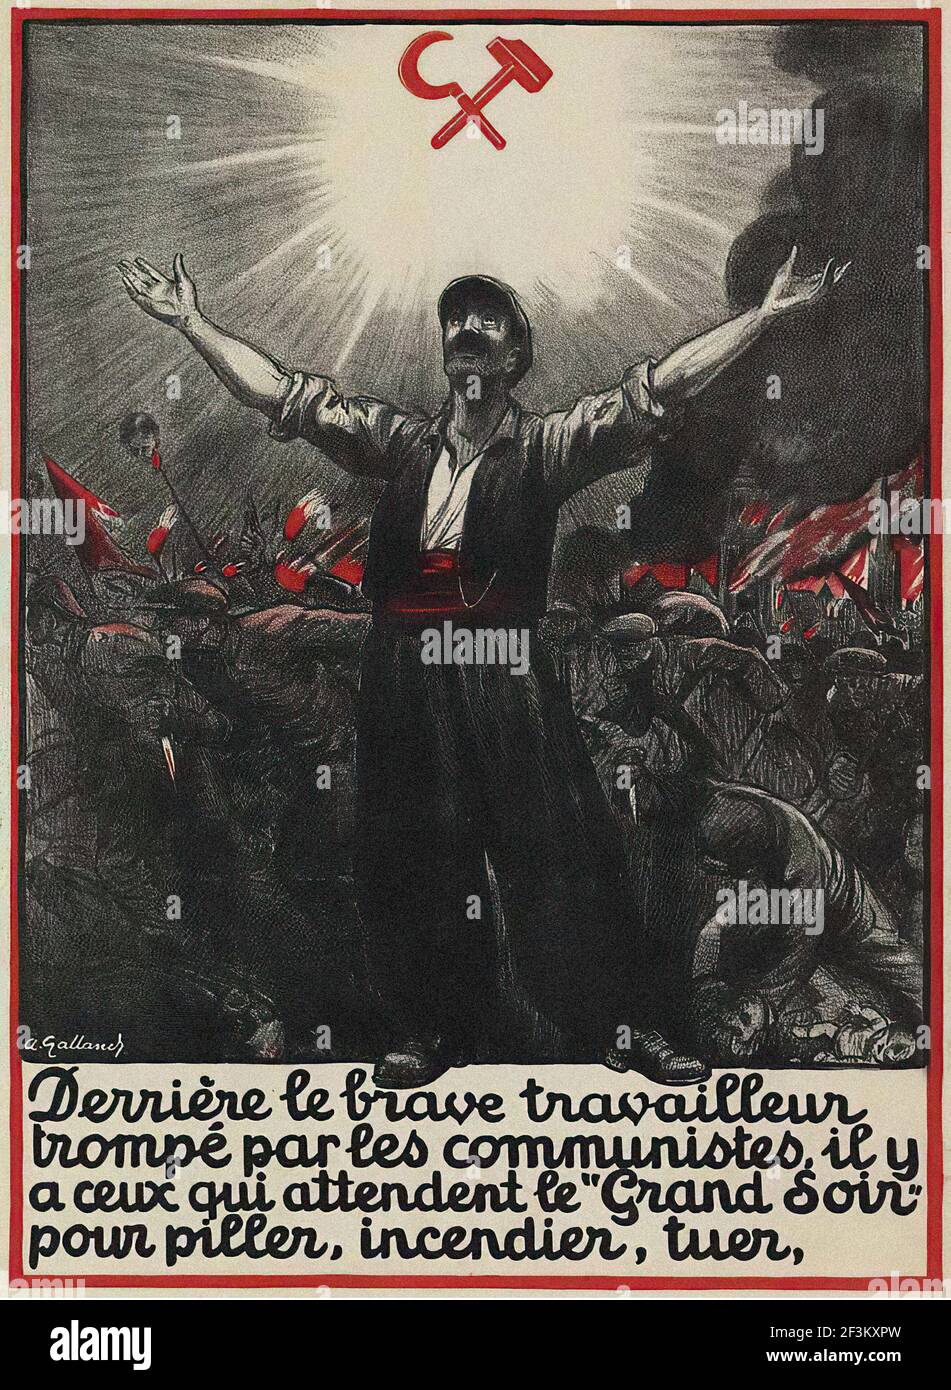 Französisches antikommunistisches Propagandaplakat. Viele Arbeiter irren sich über die Kommunisten, die tatsächlich erwarten, dass die große Nacht kommt, wenn es po sein wird Stockfoto